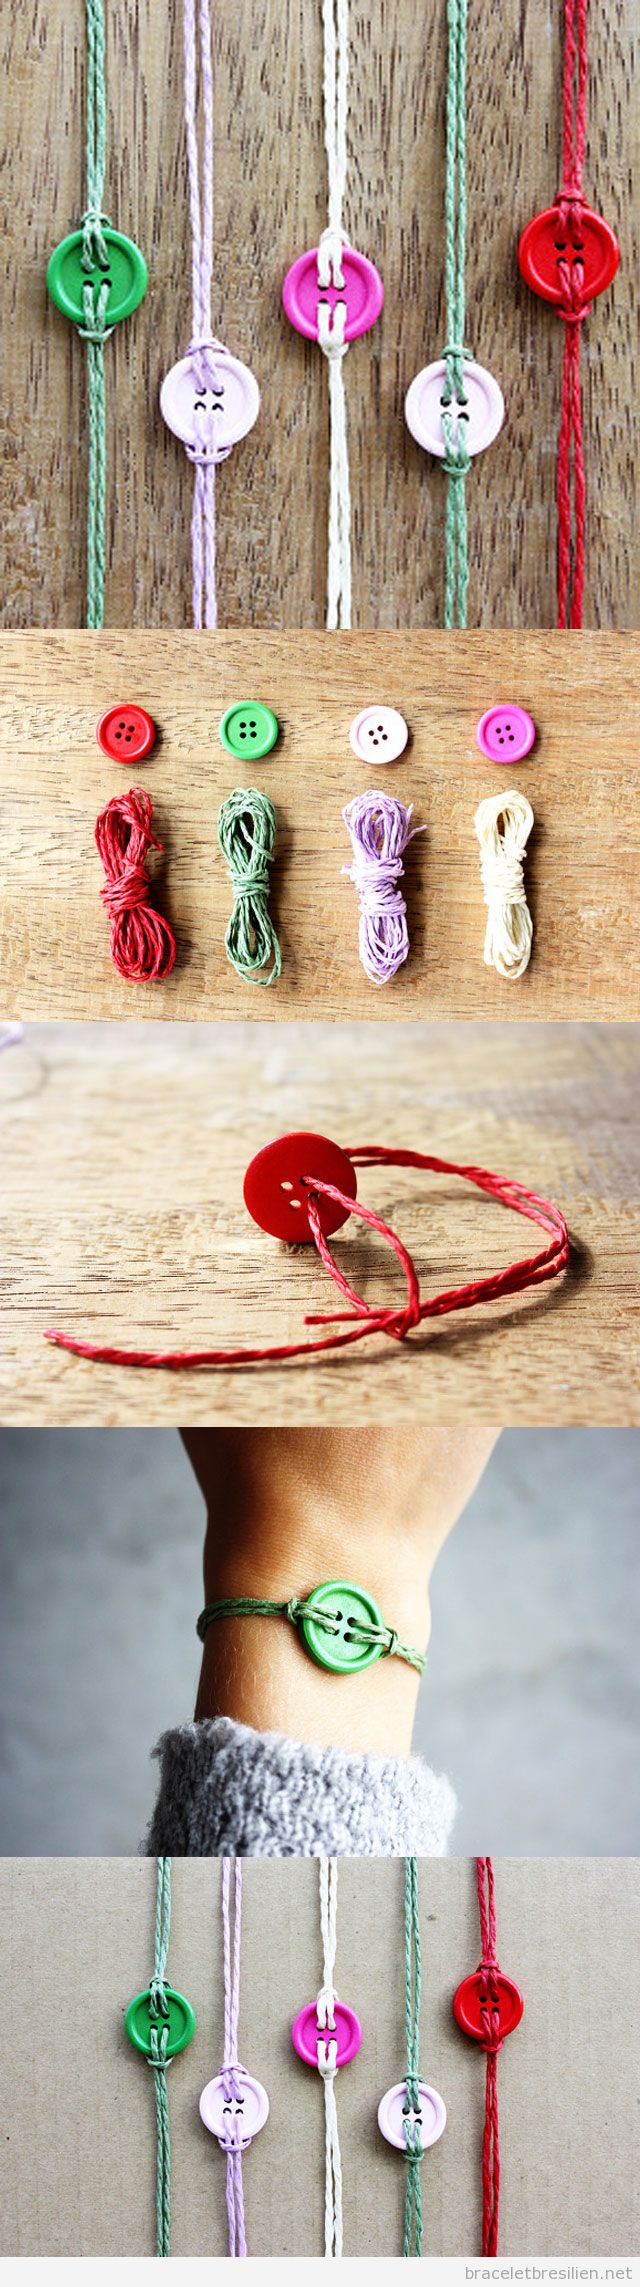 Bracelet DIY très simple réalisé avec cords et boutons - Bracelets